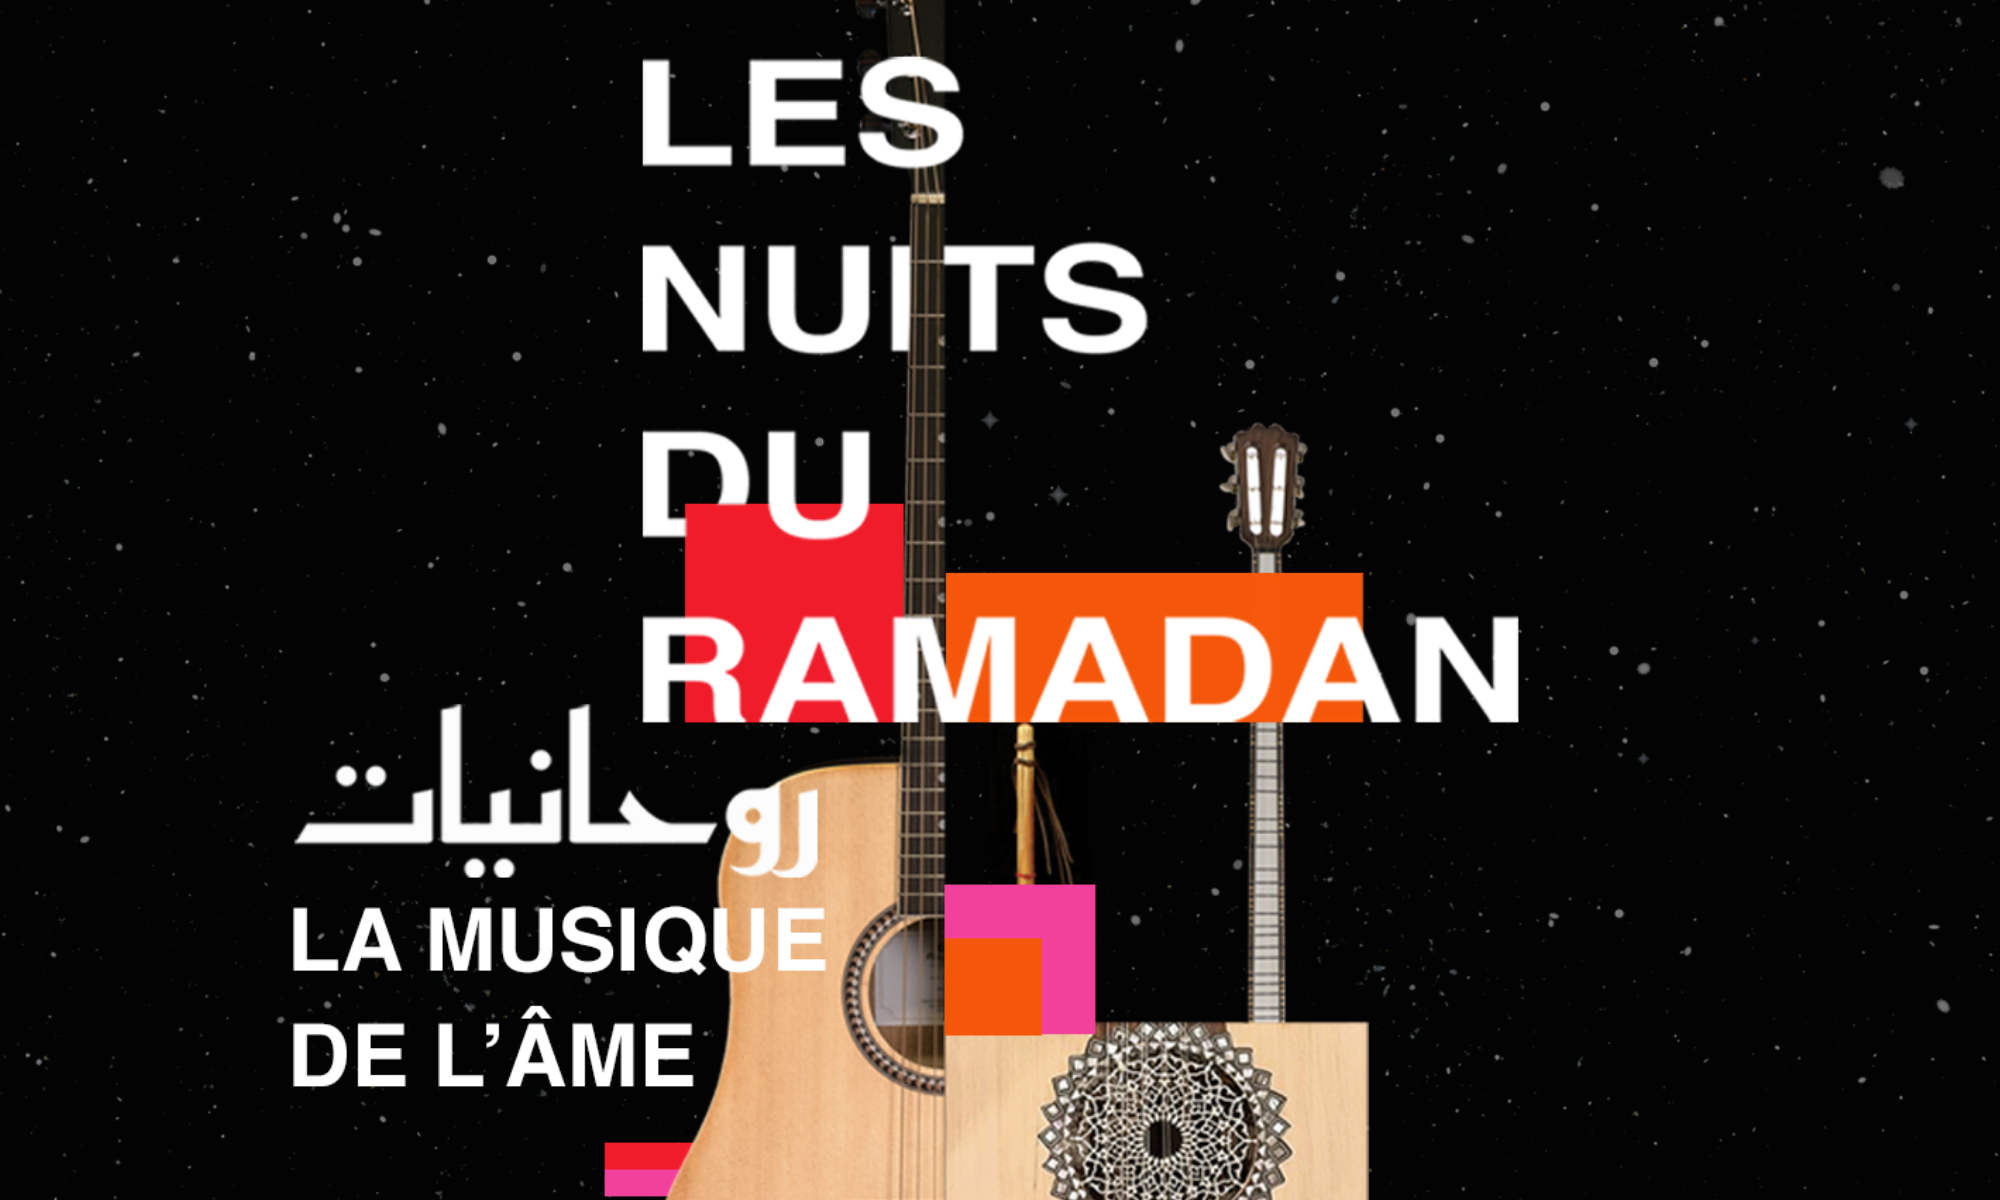 Les nuits du Ramadan